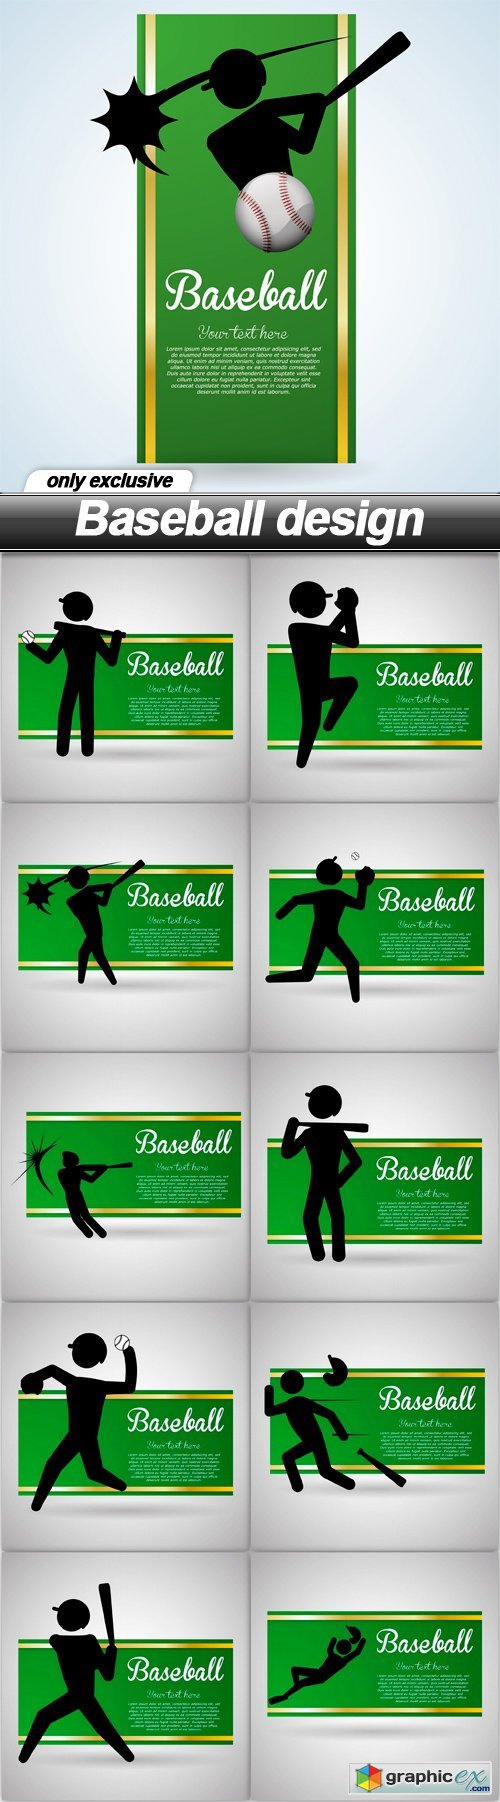 Baseball design - 20 EPS